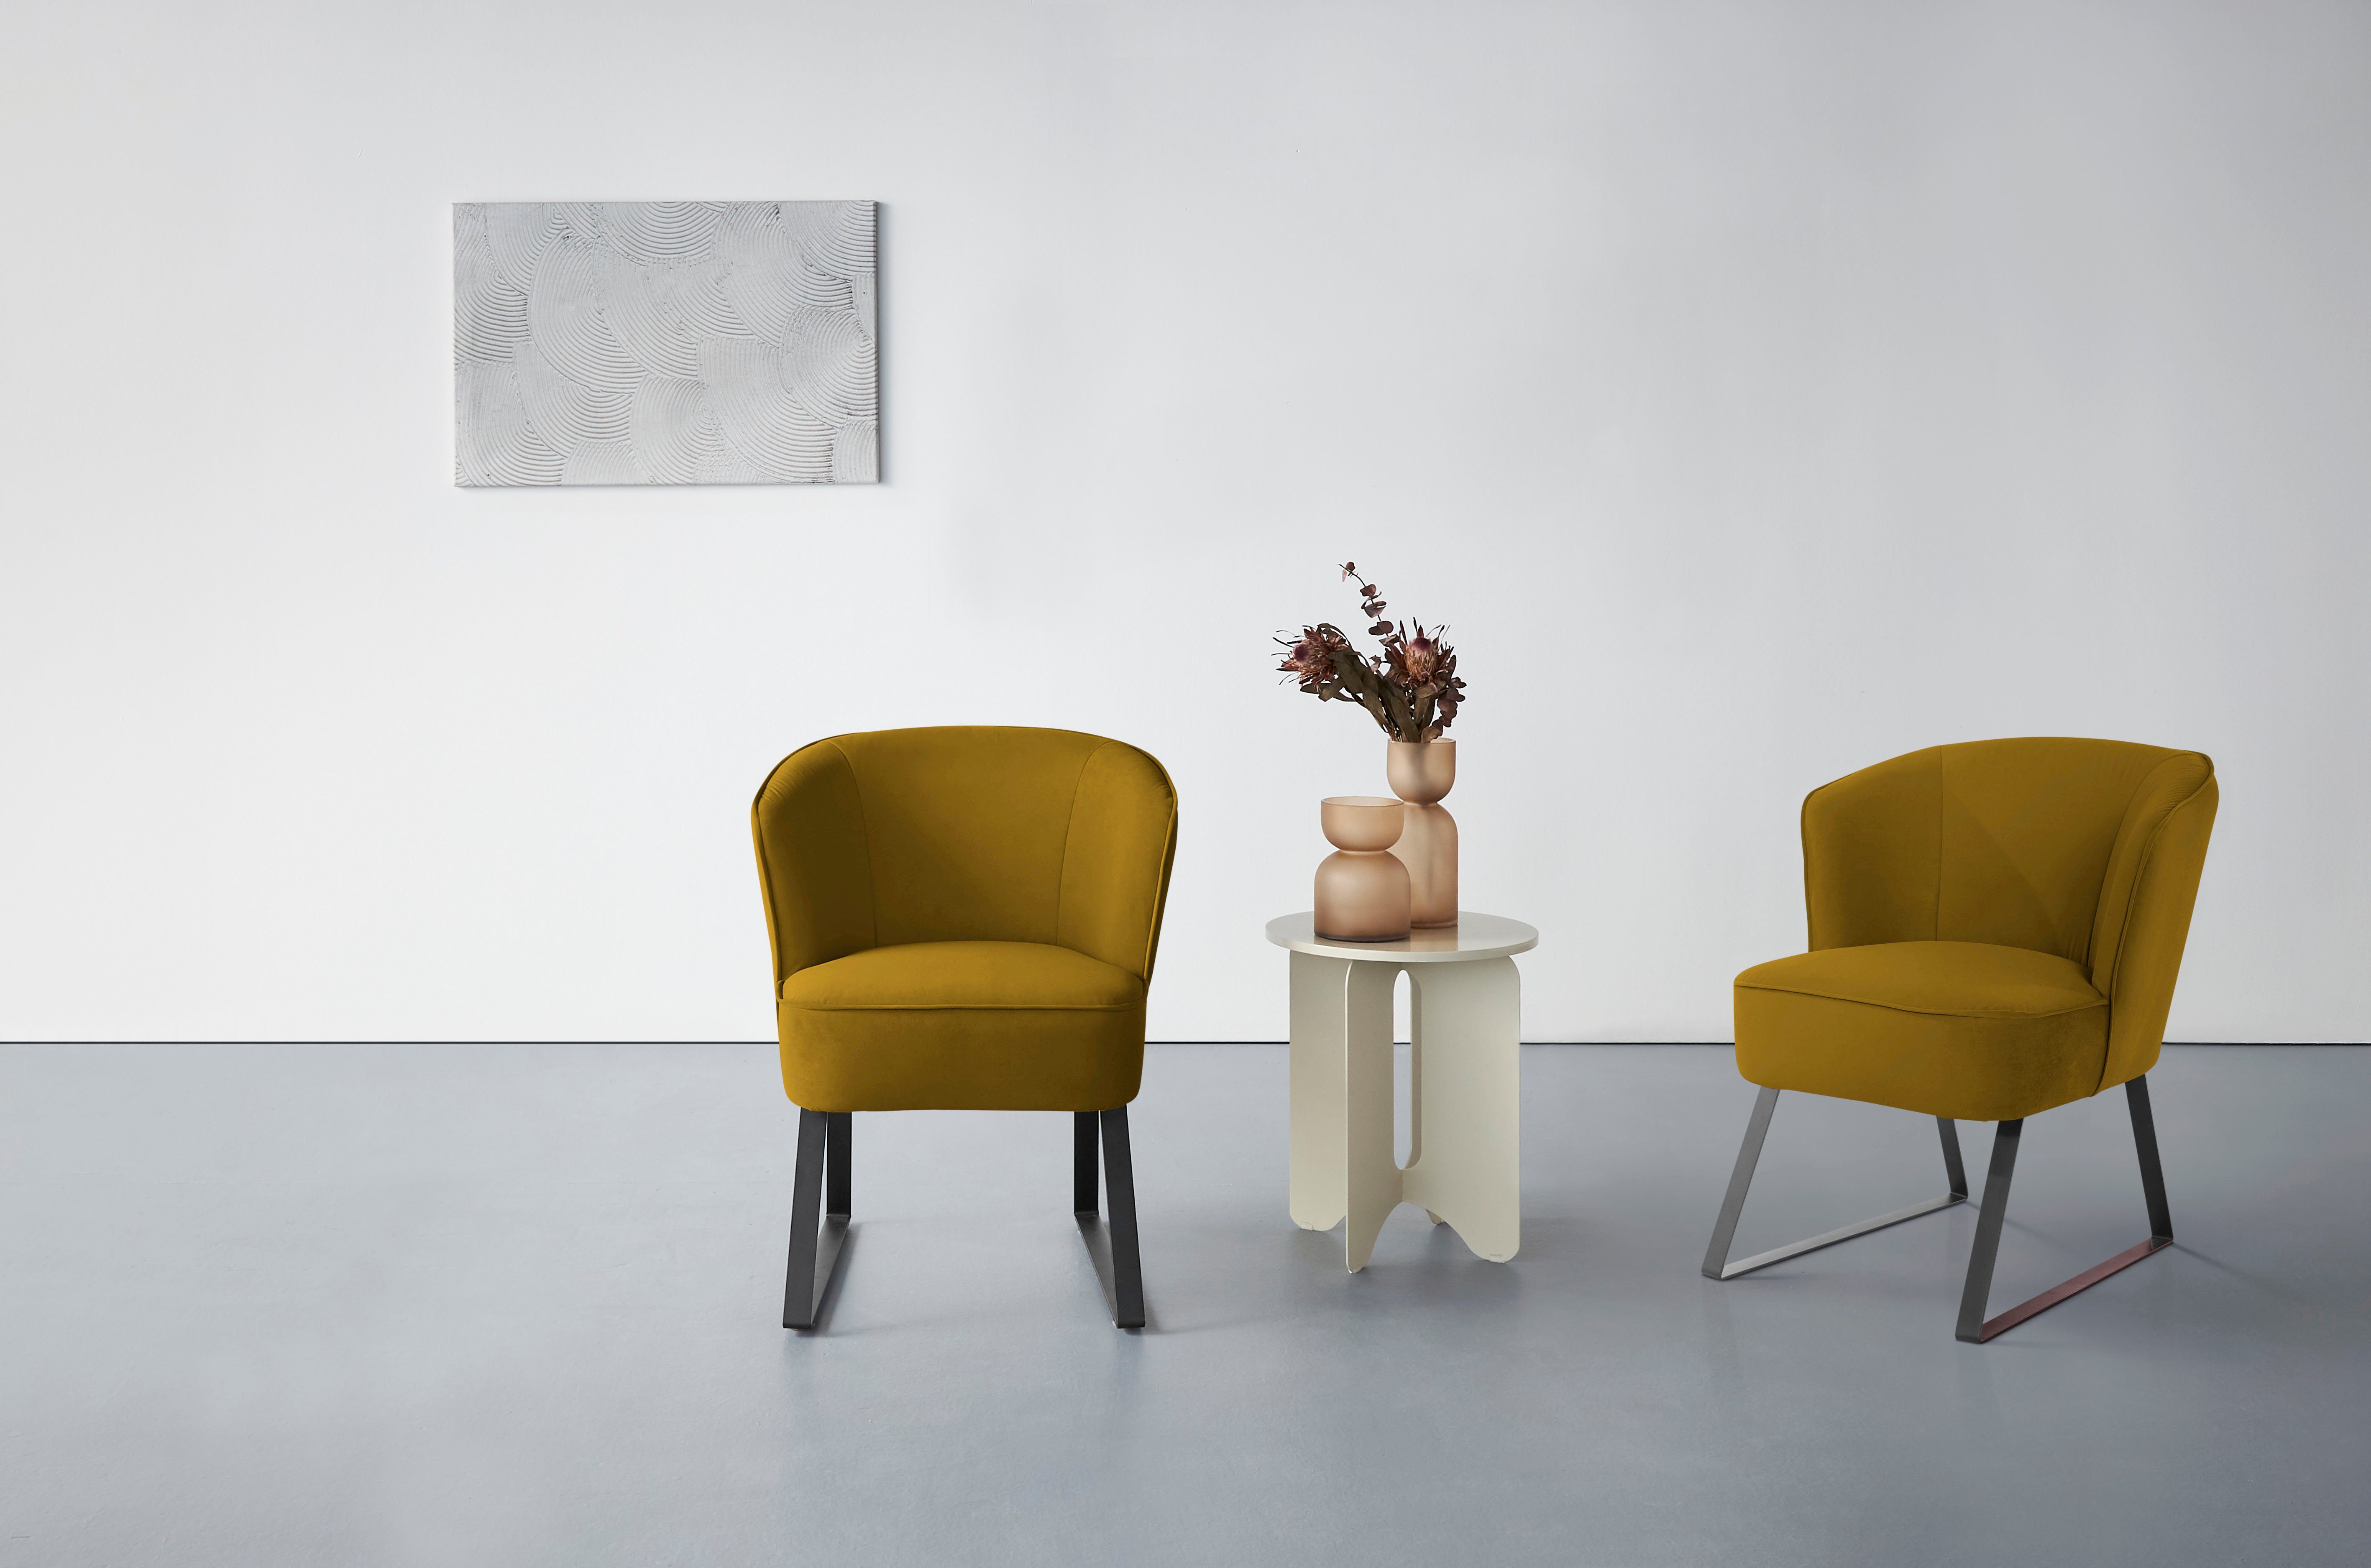 Stck. und exxpo Americano, 1 in sofa Bezug fashion Sessel verschiedenen - Keder mit Metallfüßen, Qualitäten,